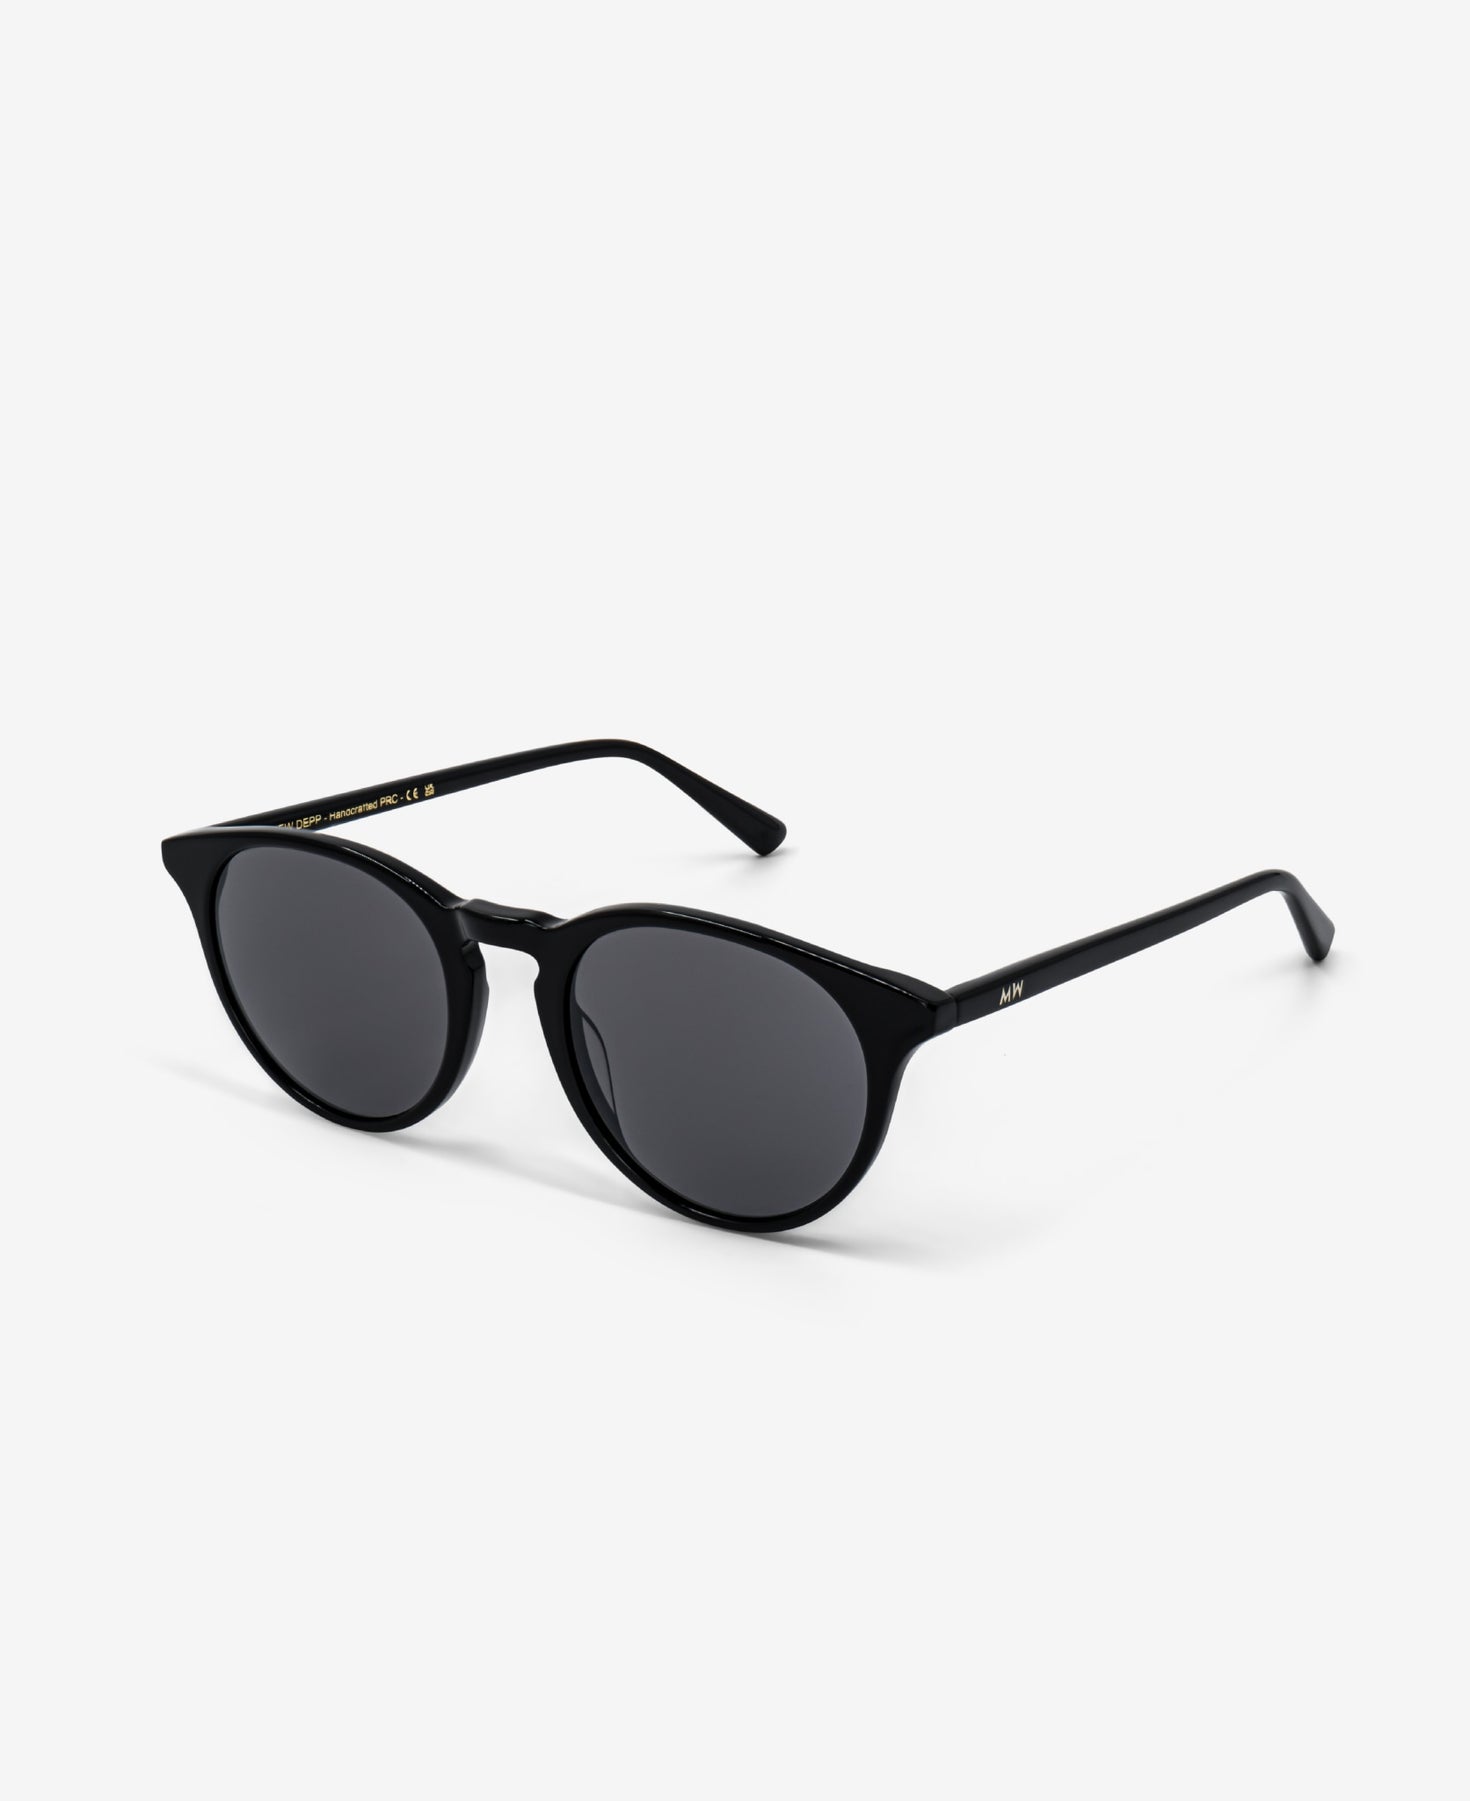 Messy Weekend New Depp Sunglasses - Black